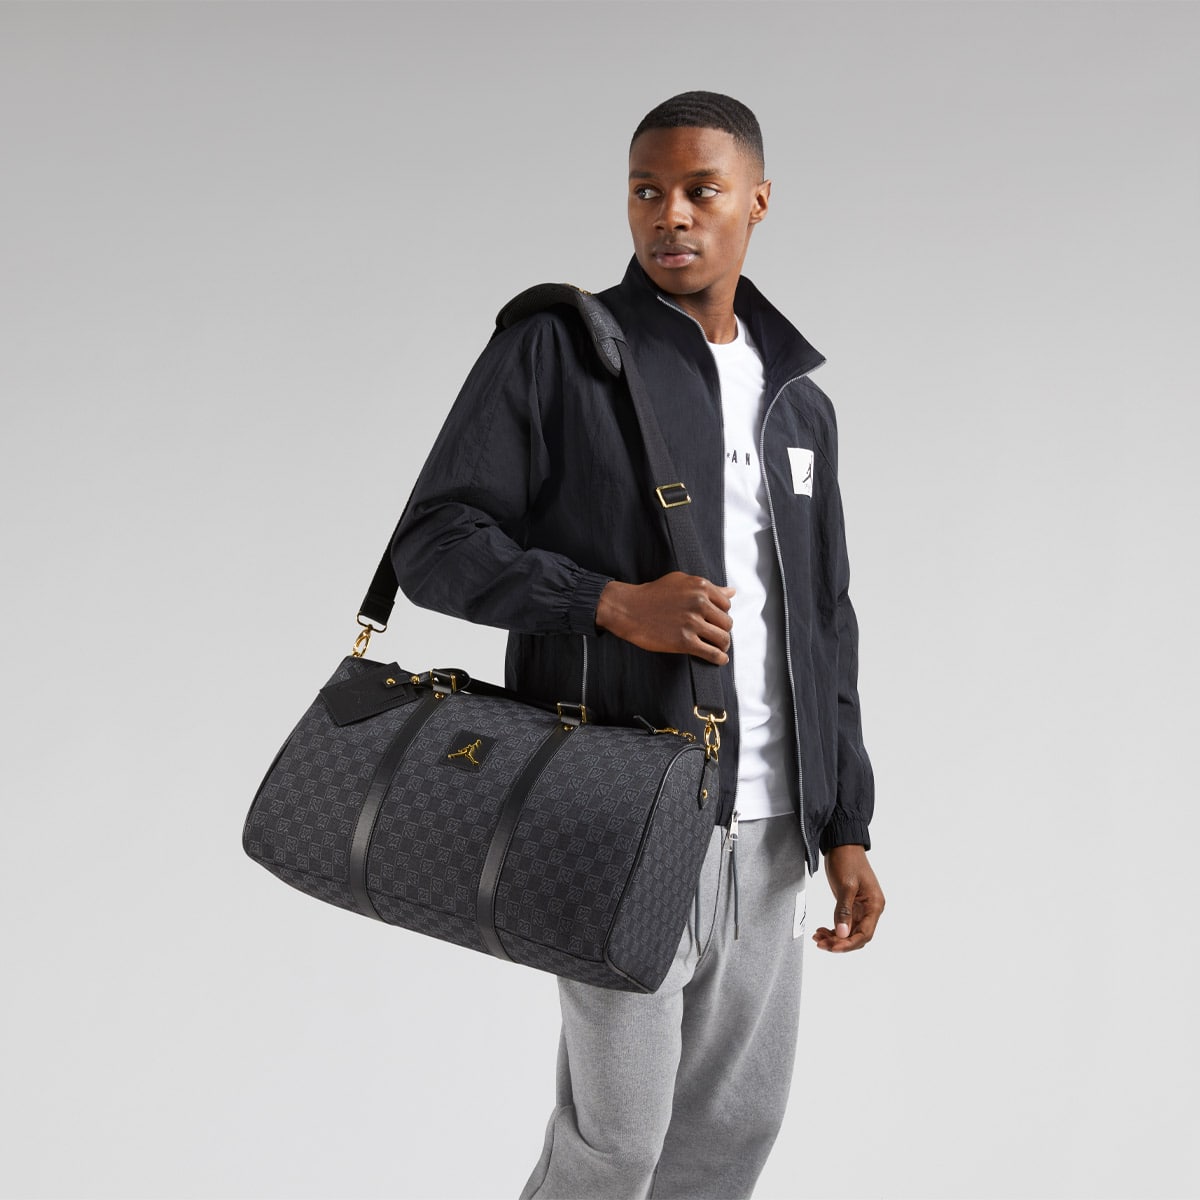 Nike Jordan Brand Monogram Duffle Bag